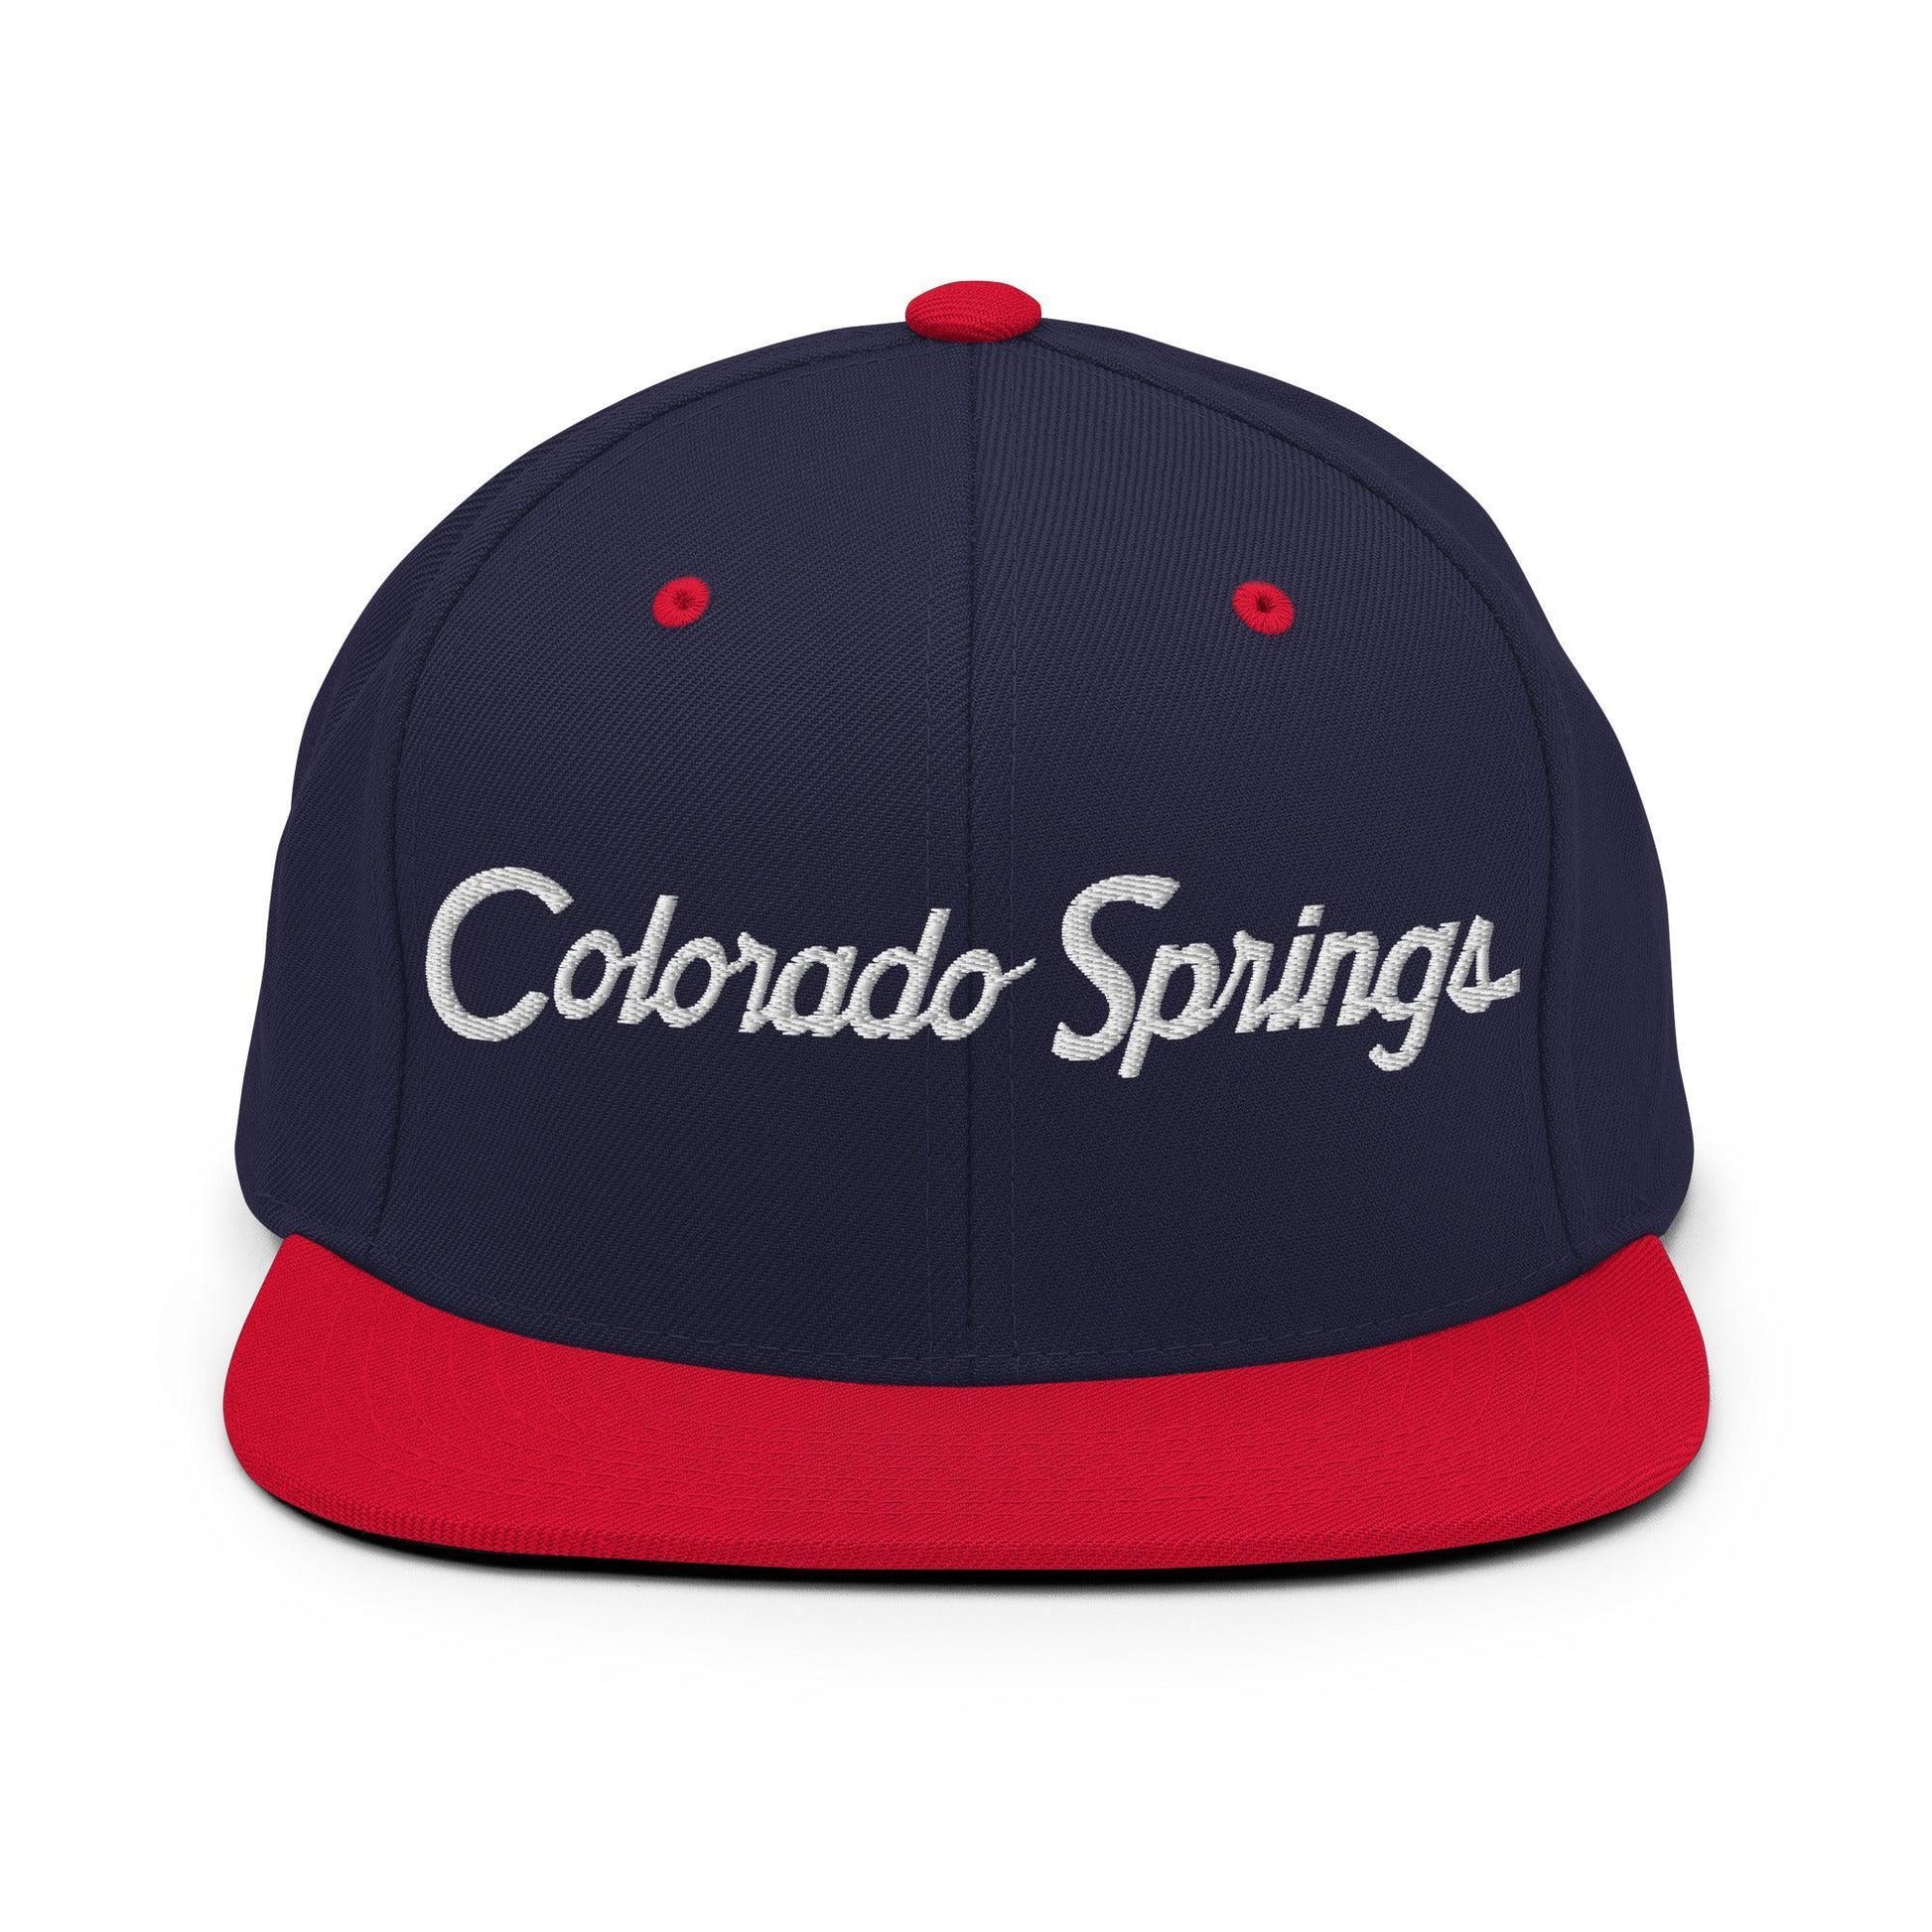 Colorado Springs Script Snapback Hat Navy/ Red